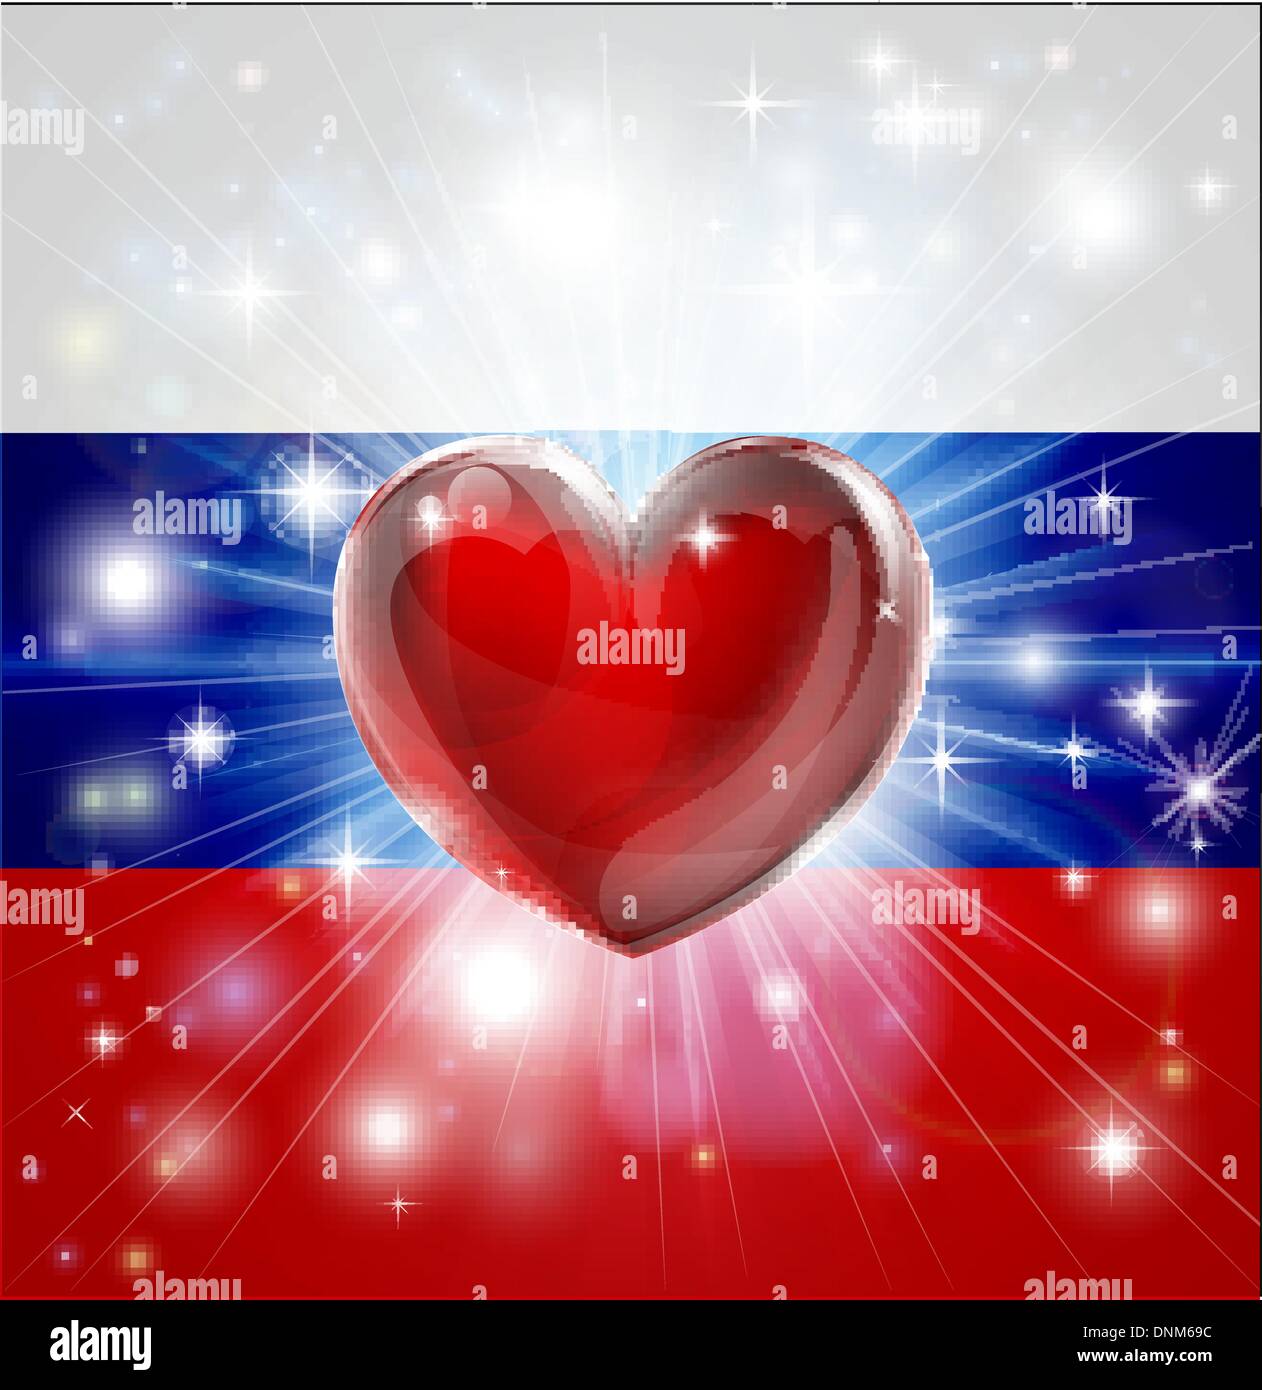 Drapeau de la Russie avec l'arrière-plan patriotique ou pyrotechniques light burst et coeur d'amour dans le centre Illustration de Vecteur